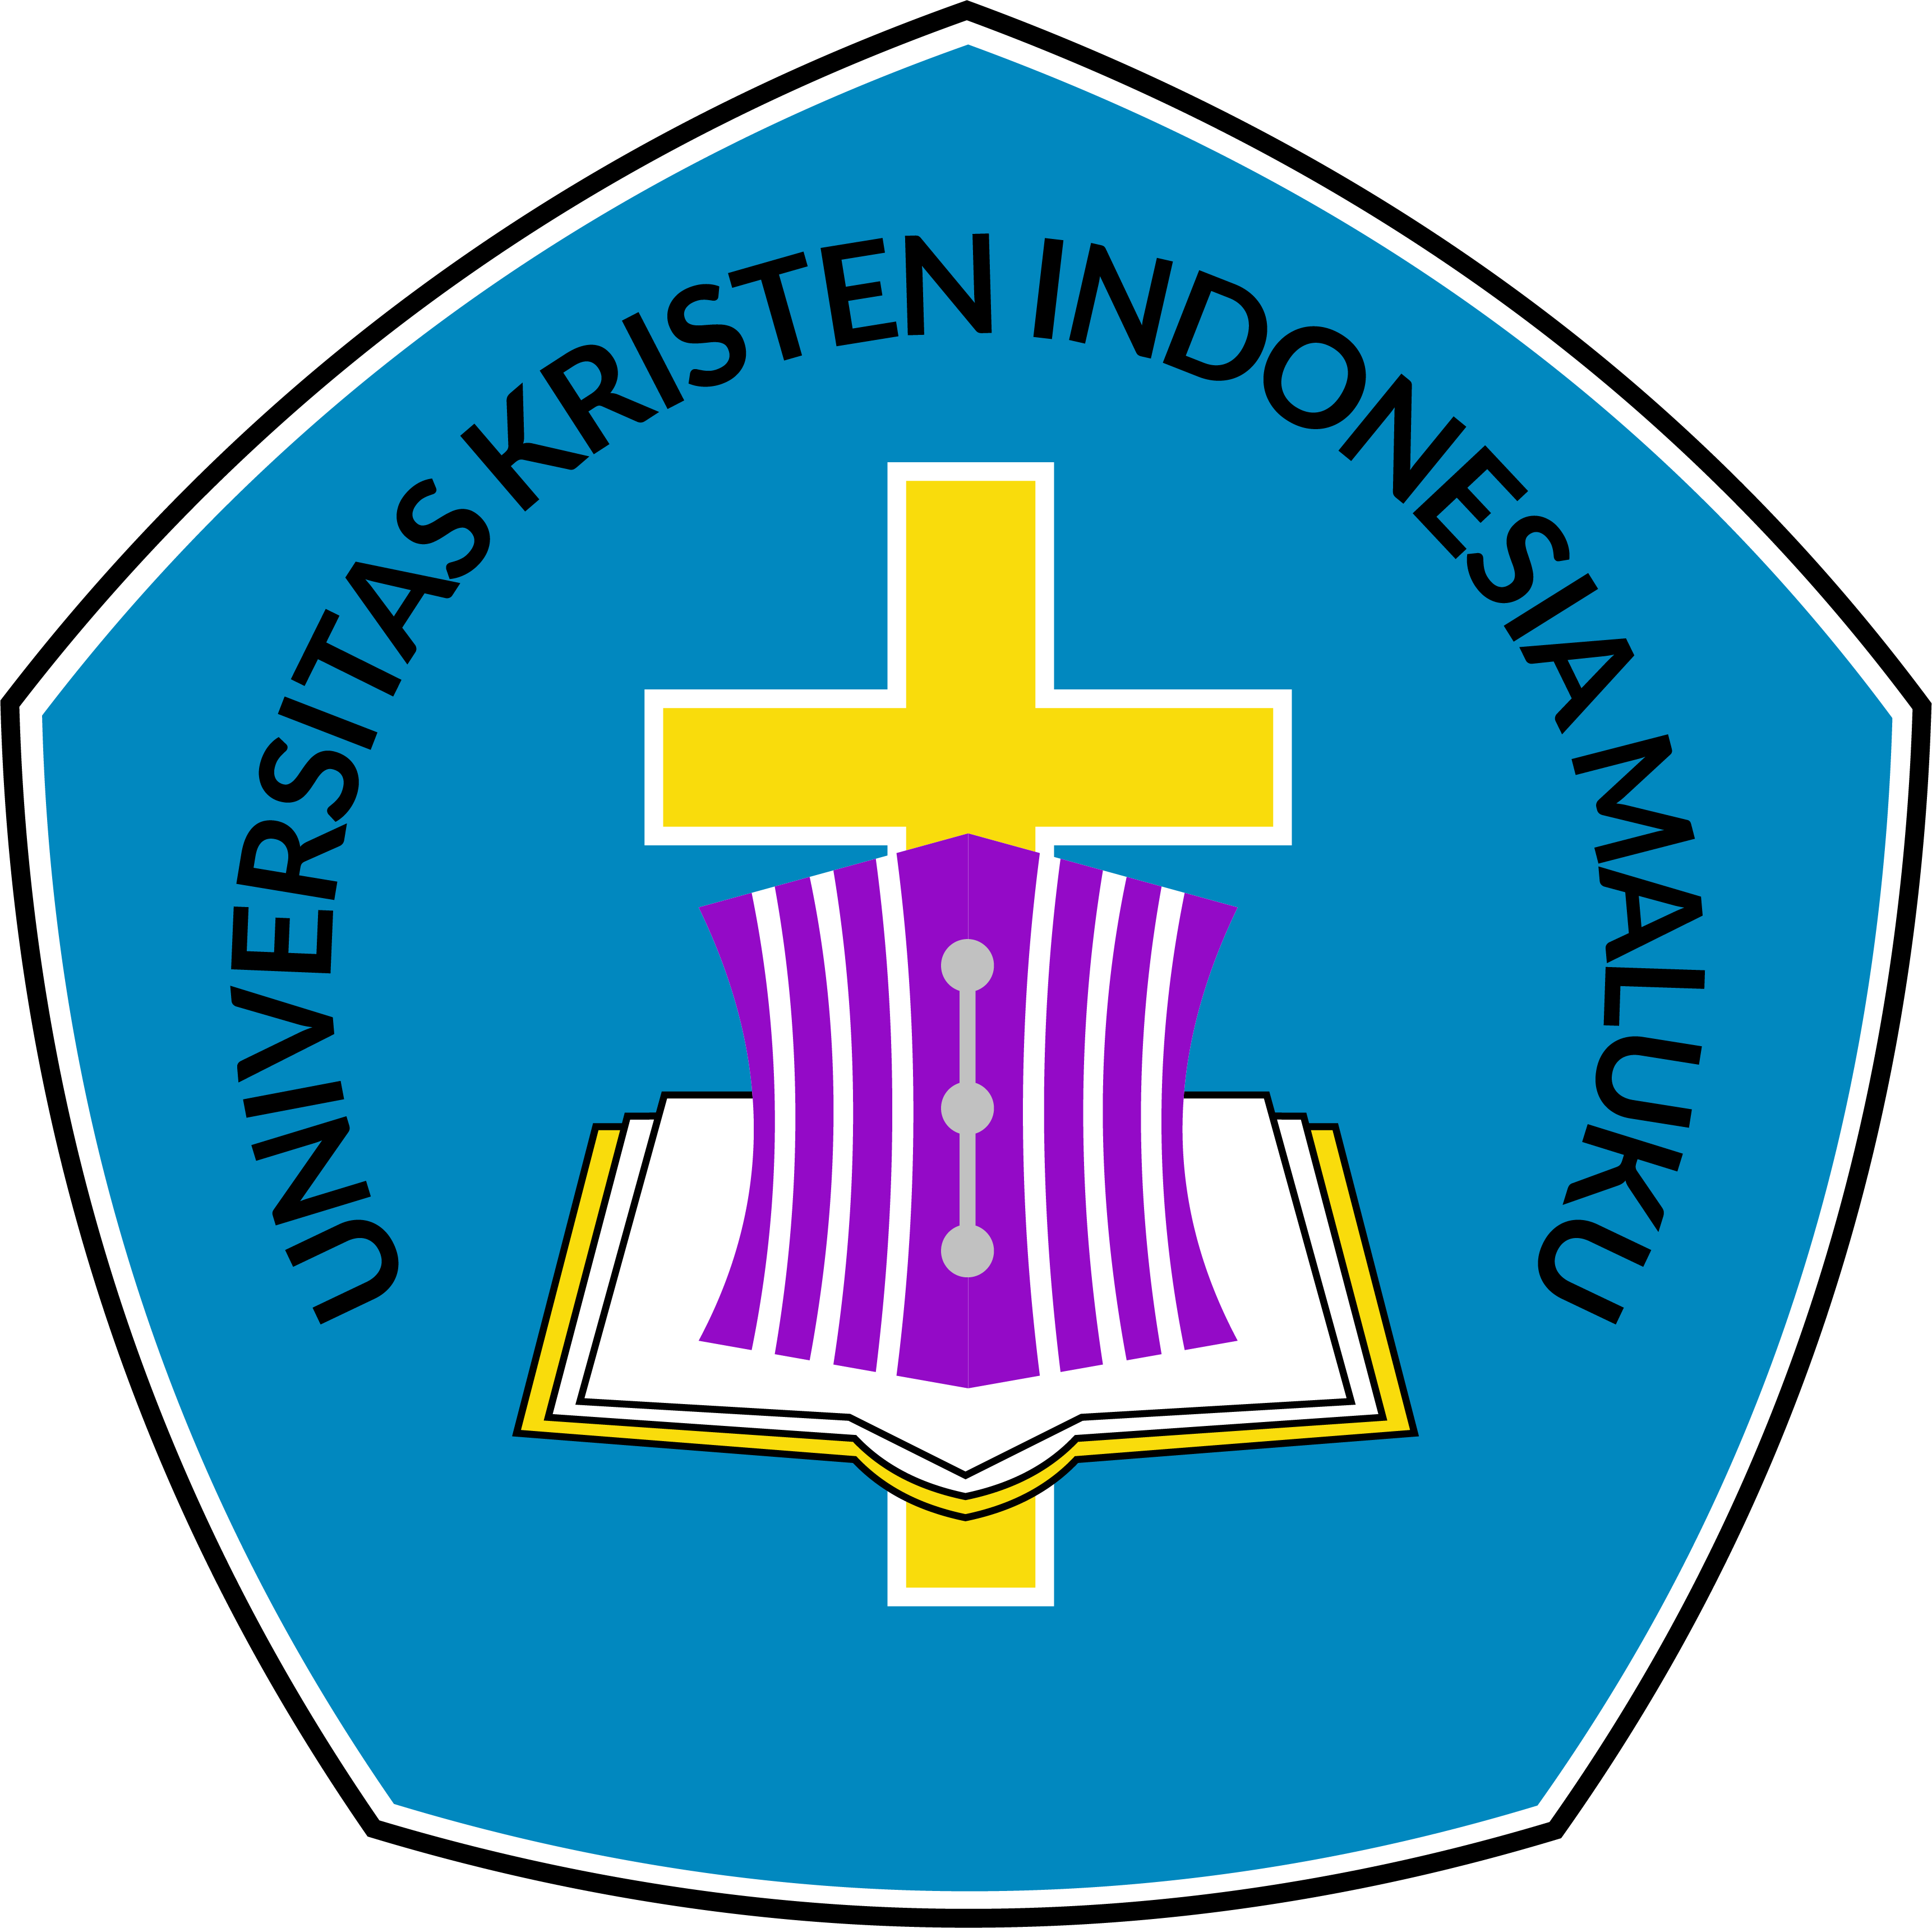 Universitas Kristen Indonesia Maluku